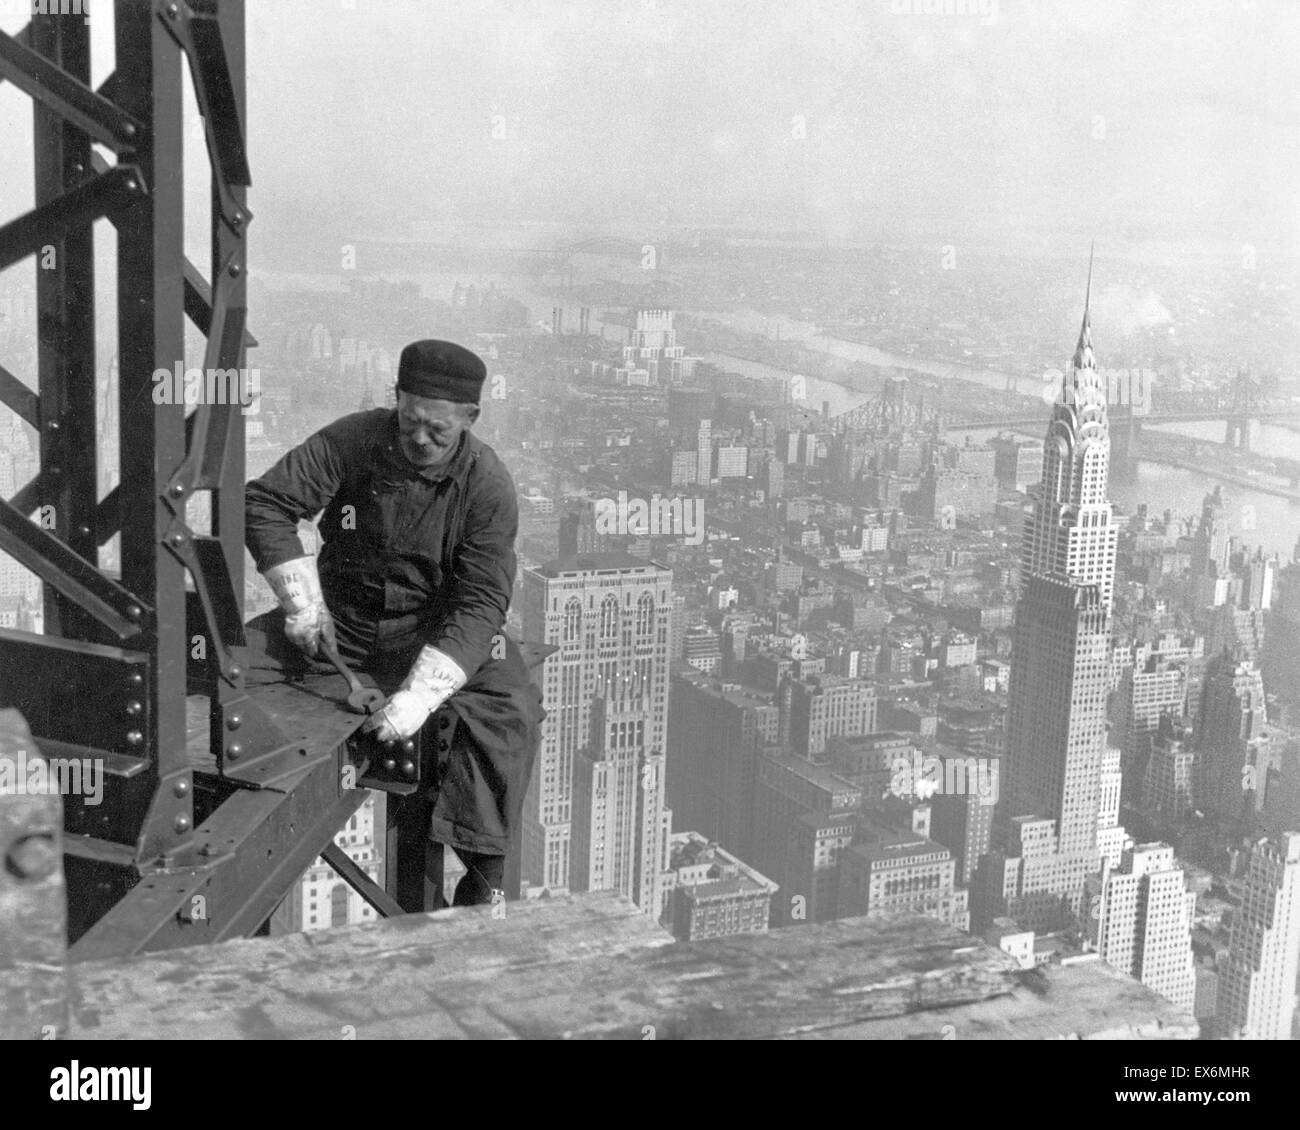 Travailleur de la construction sur l'Empire state building, New York City. Le Chrysler building est vu à la droite. 1930 Banque D'Images